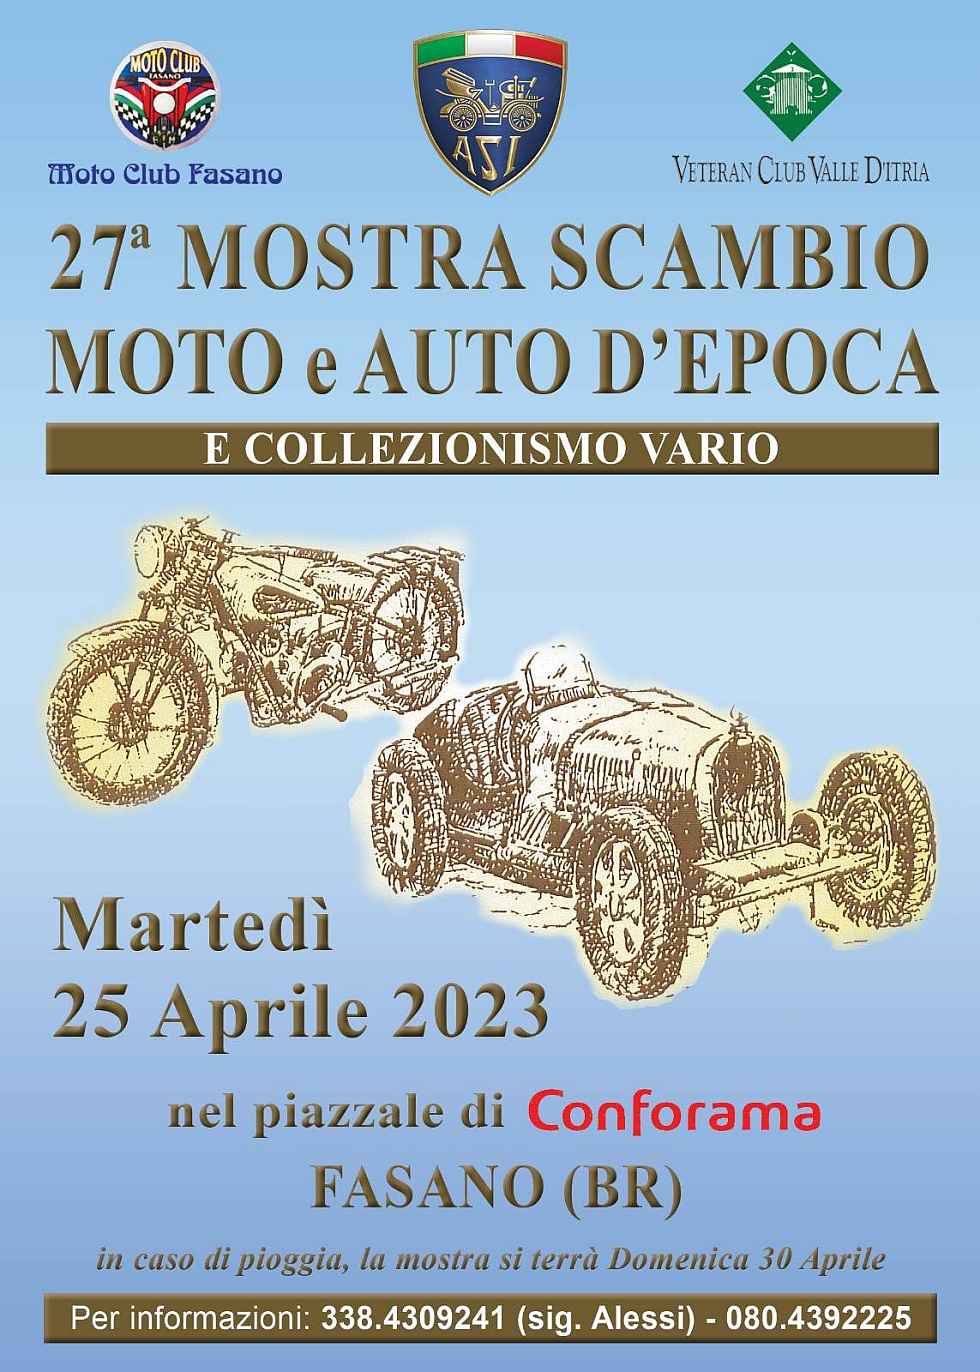 Fasano (BR)
"26^ Mostra Scambio Moto, Auto d'Epoca e Collezionismo vario"
25 Aprile 2022 